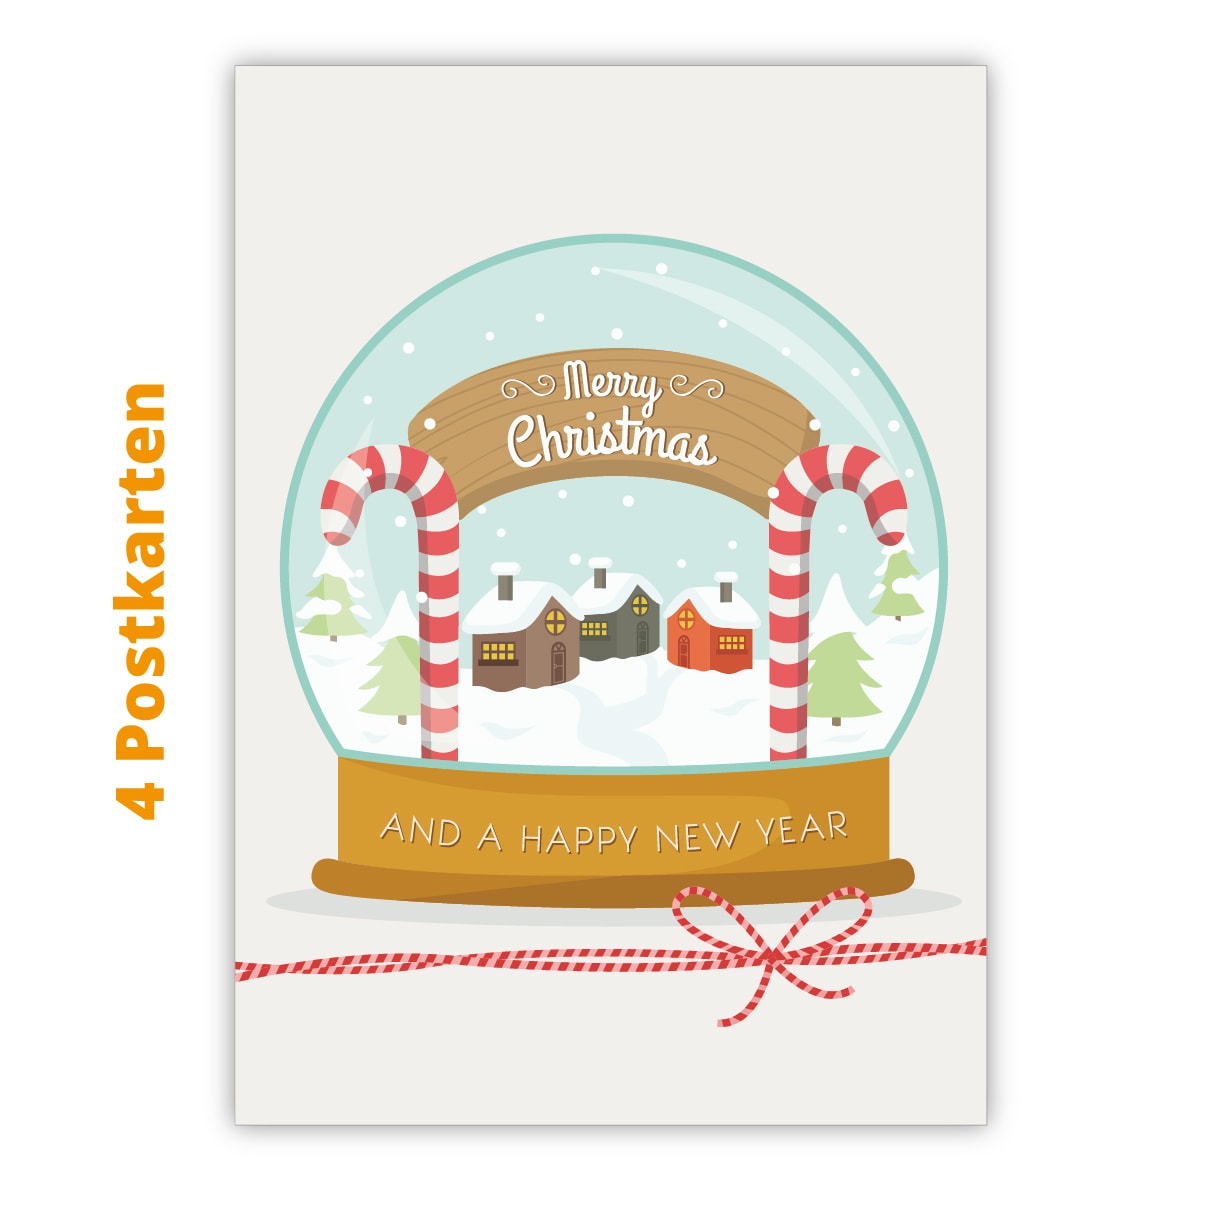 Kartenkaufrausch Postkarten in beige: Niedliche Weihnachts Postkarten